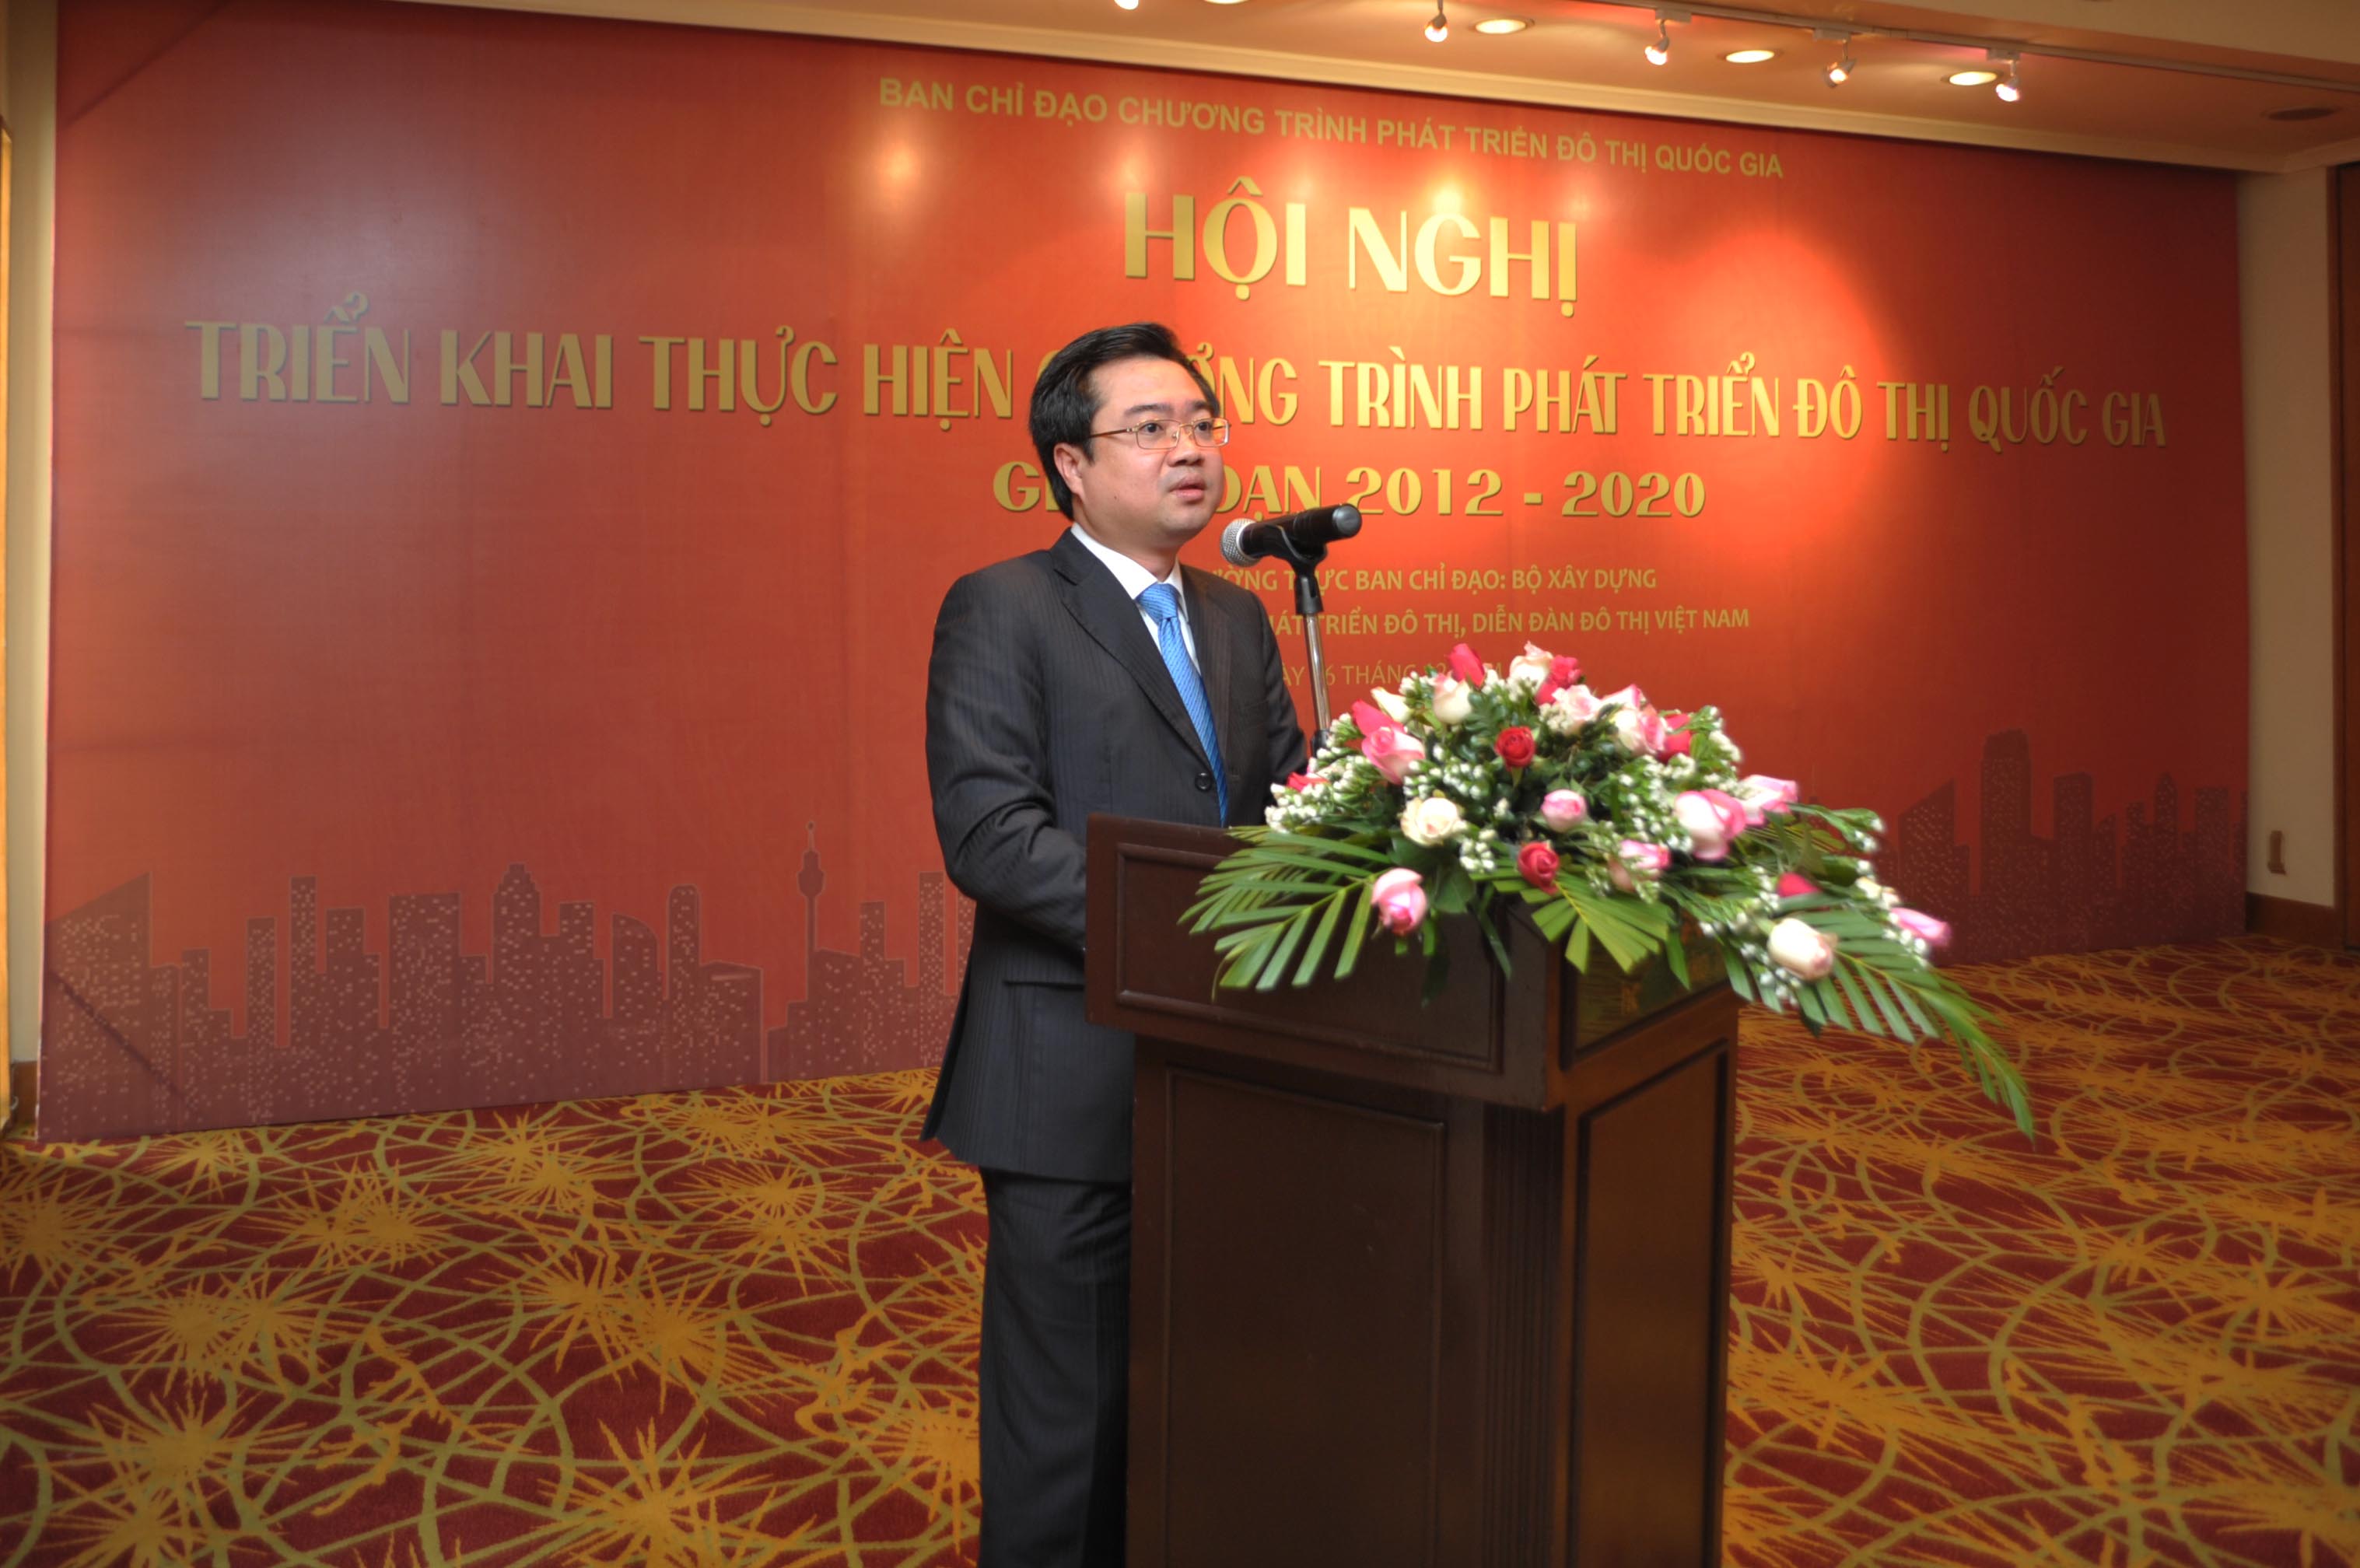 Thứ trưởng Bộ Xây dựng Nguyễn Thanh Nghị, Phó trưởng Ban thường trực Ban chỉ đạo Chương trình phát triển đô thị quốc gia (giai đoạn 2012-2020)